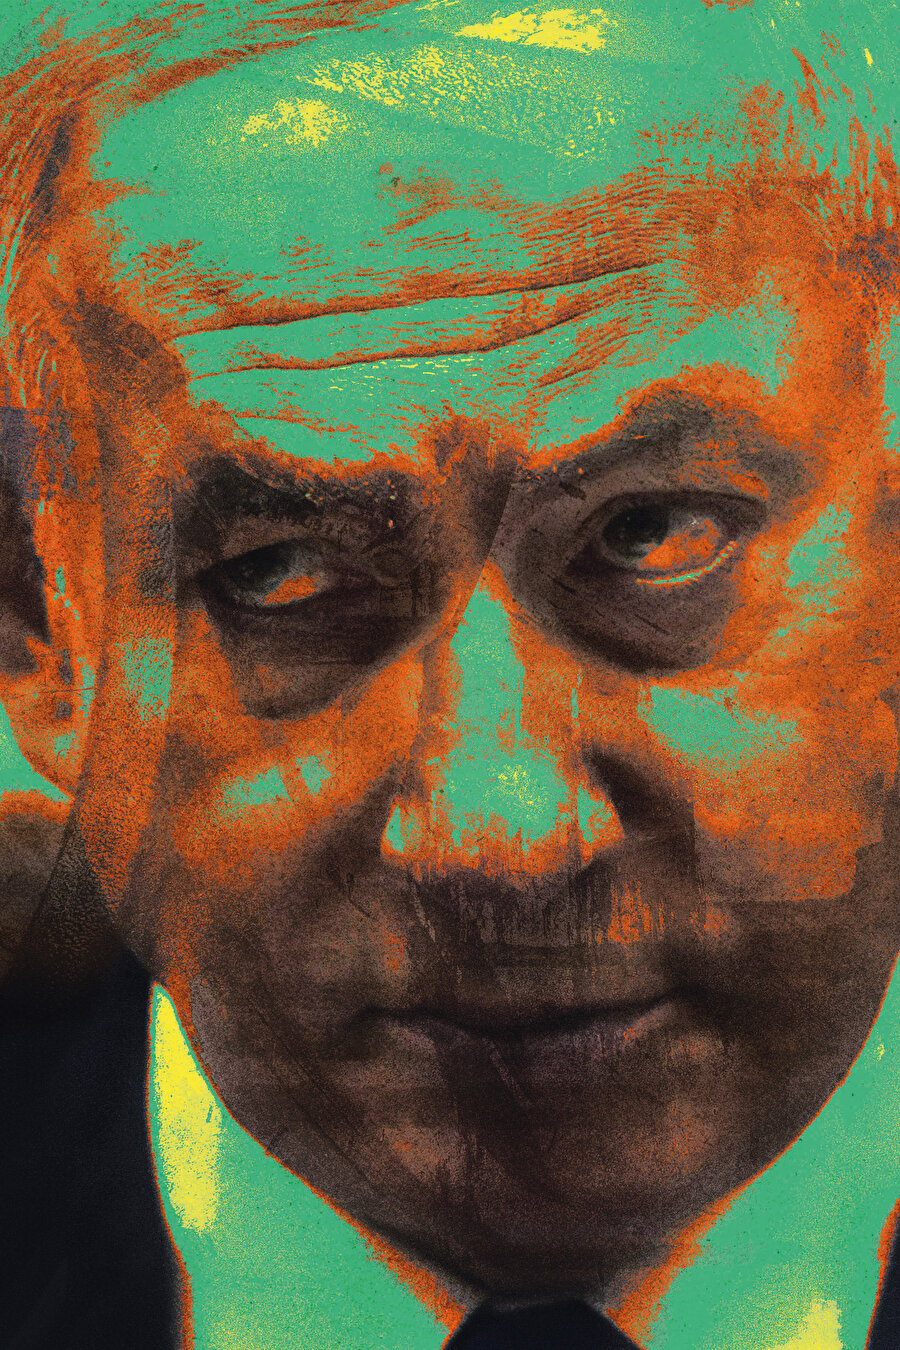  Benjamin Netanyahu.